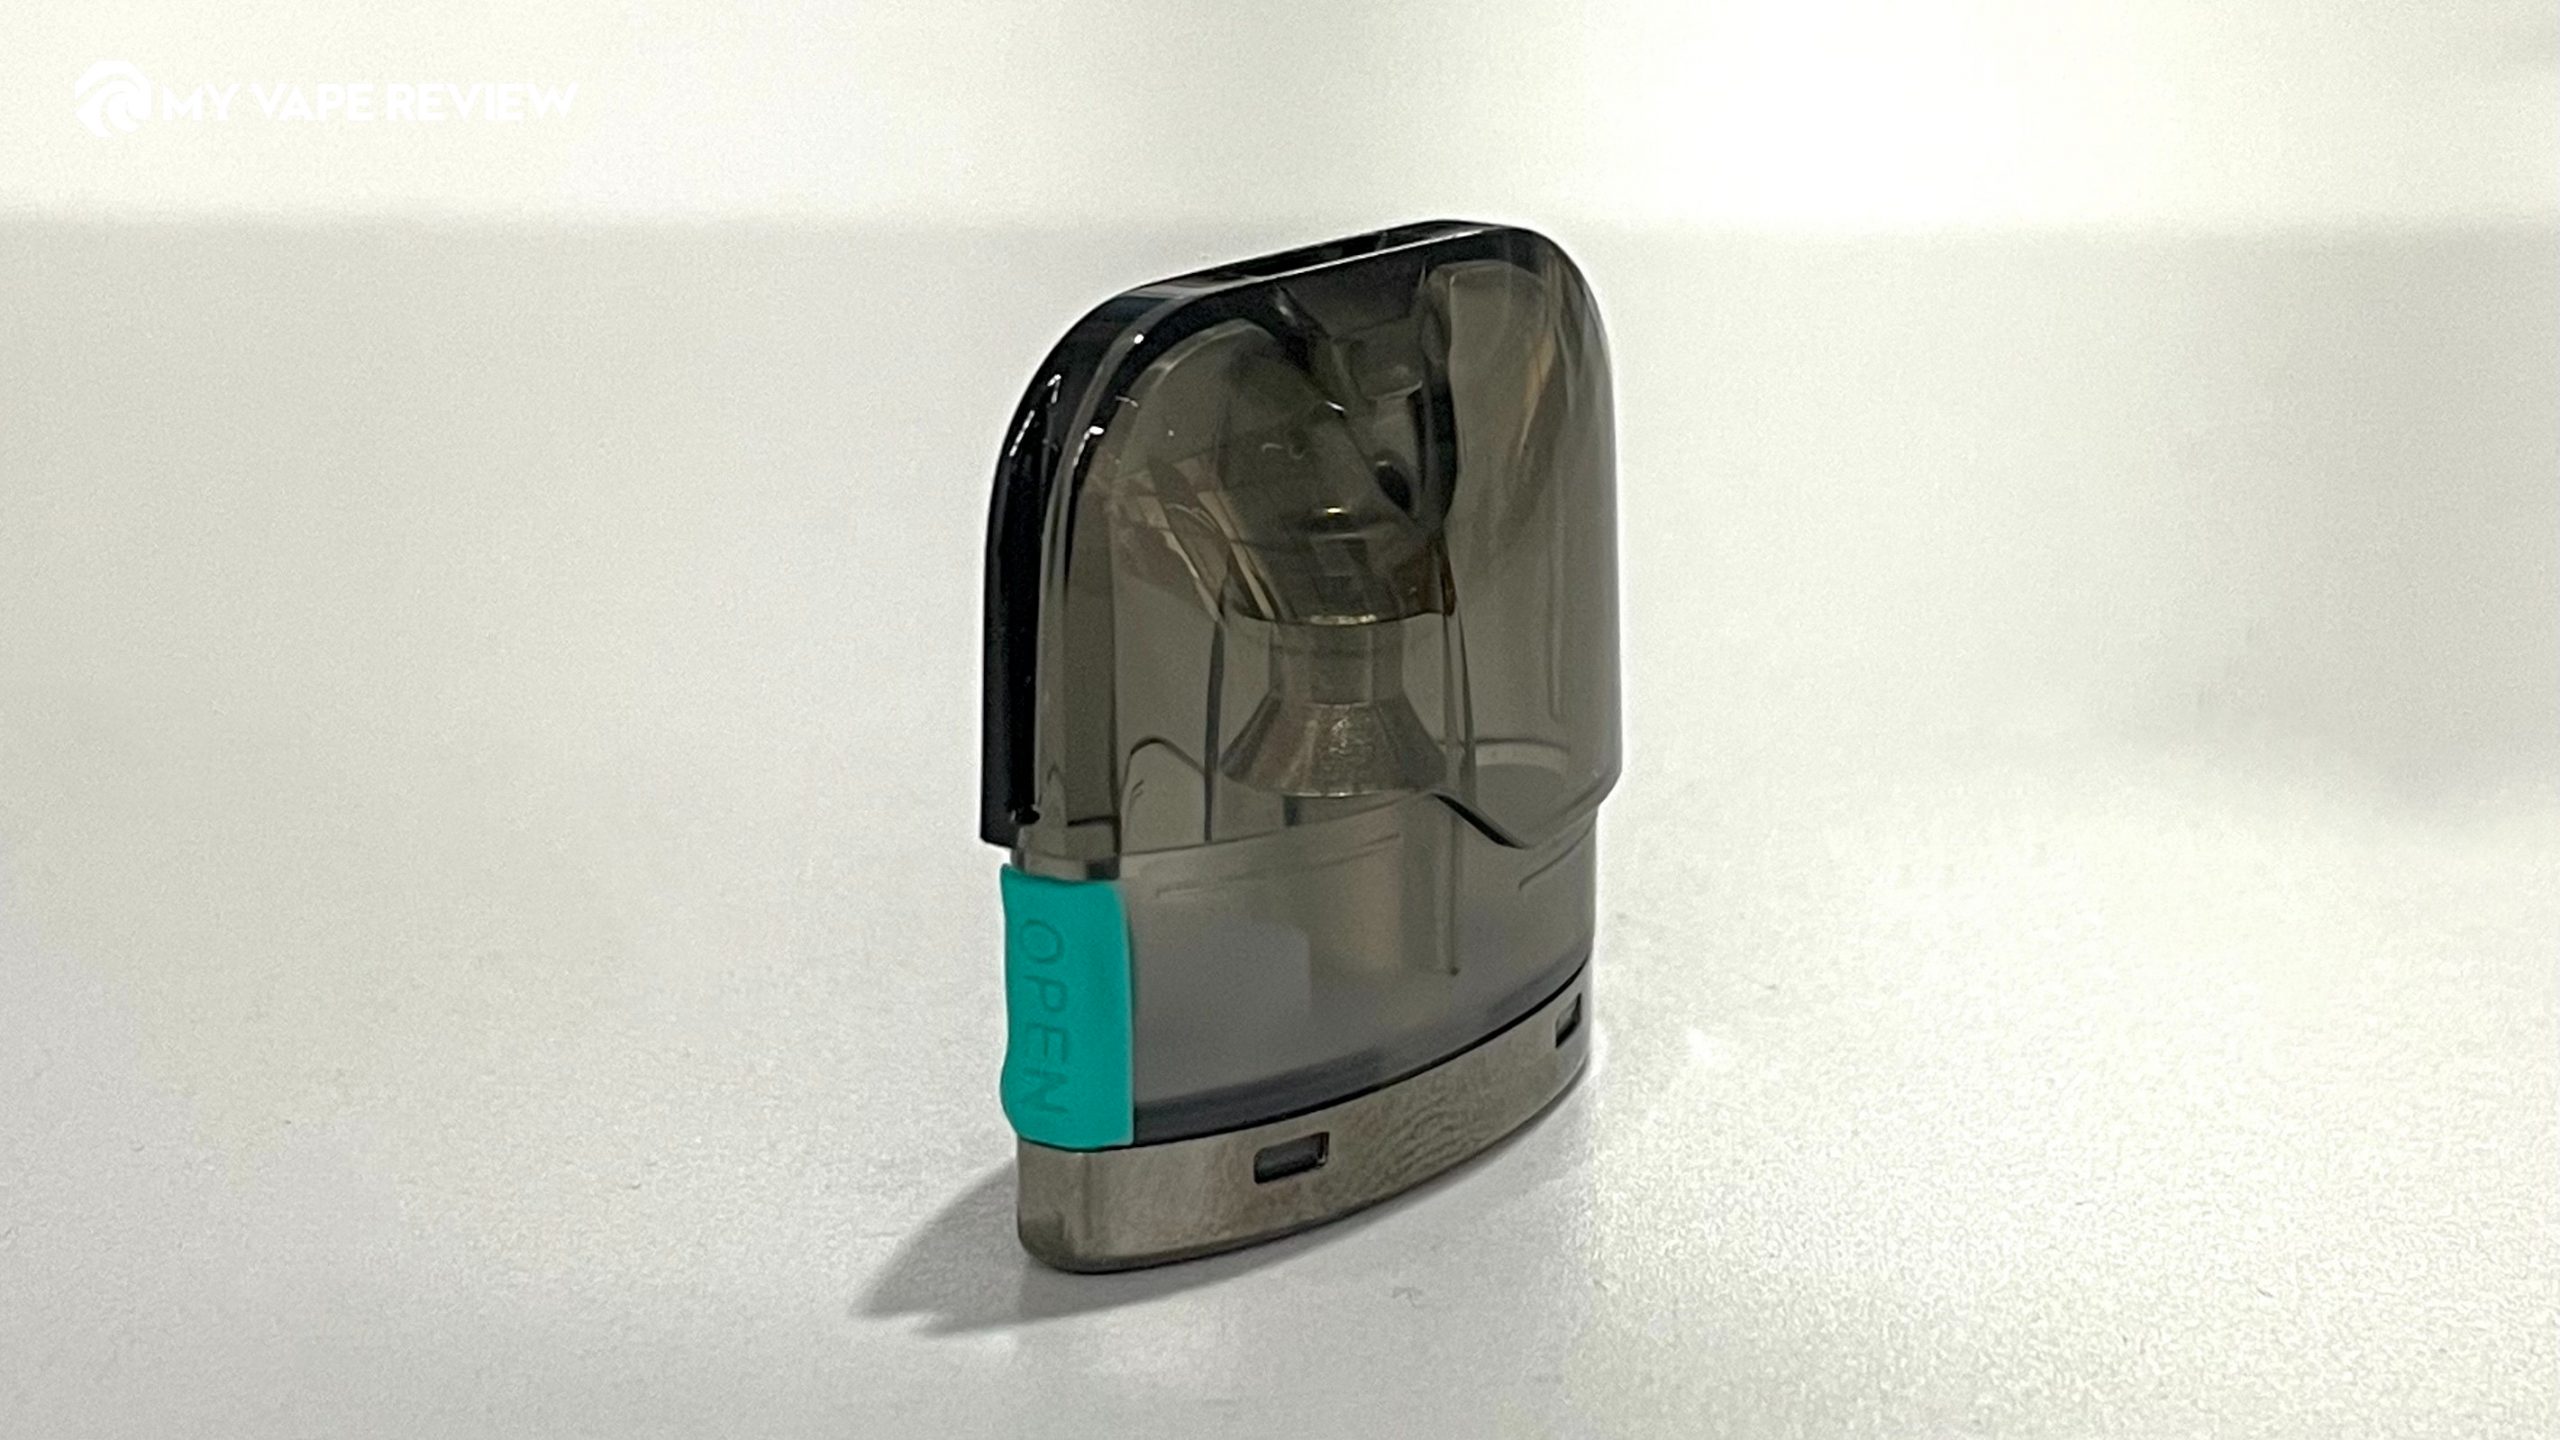 Suorin Air Mini pod cartridge